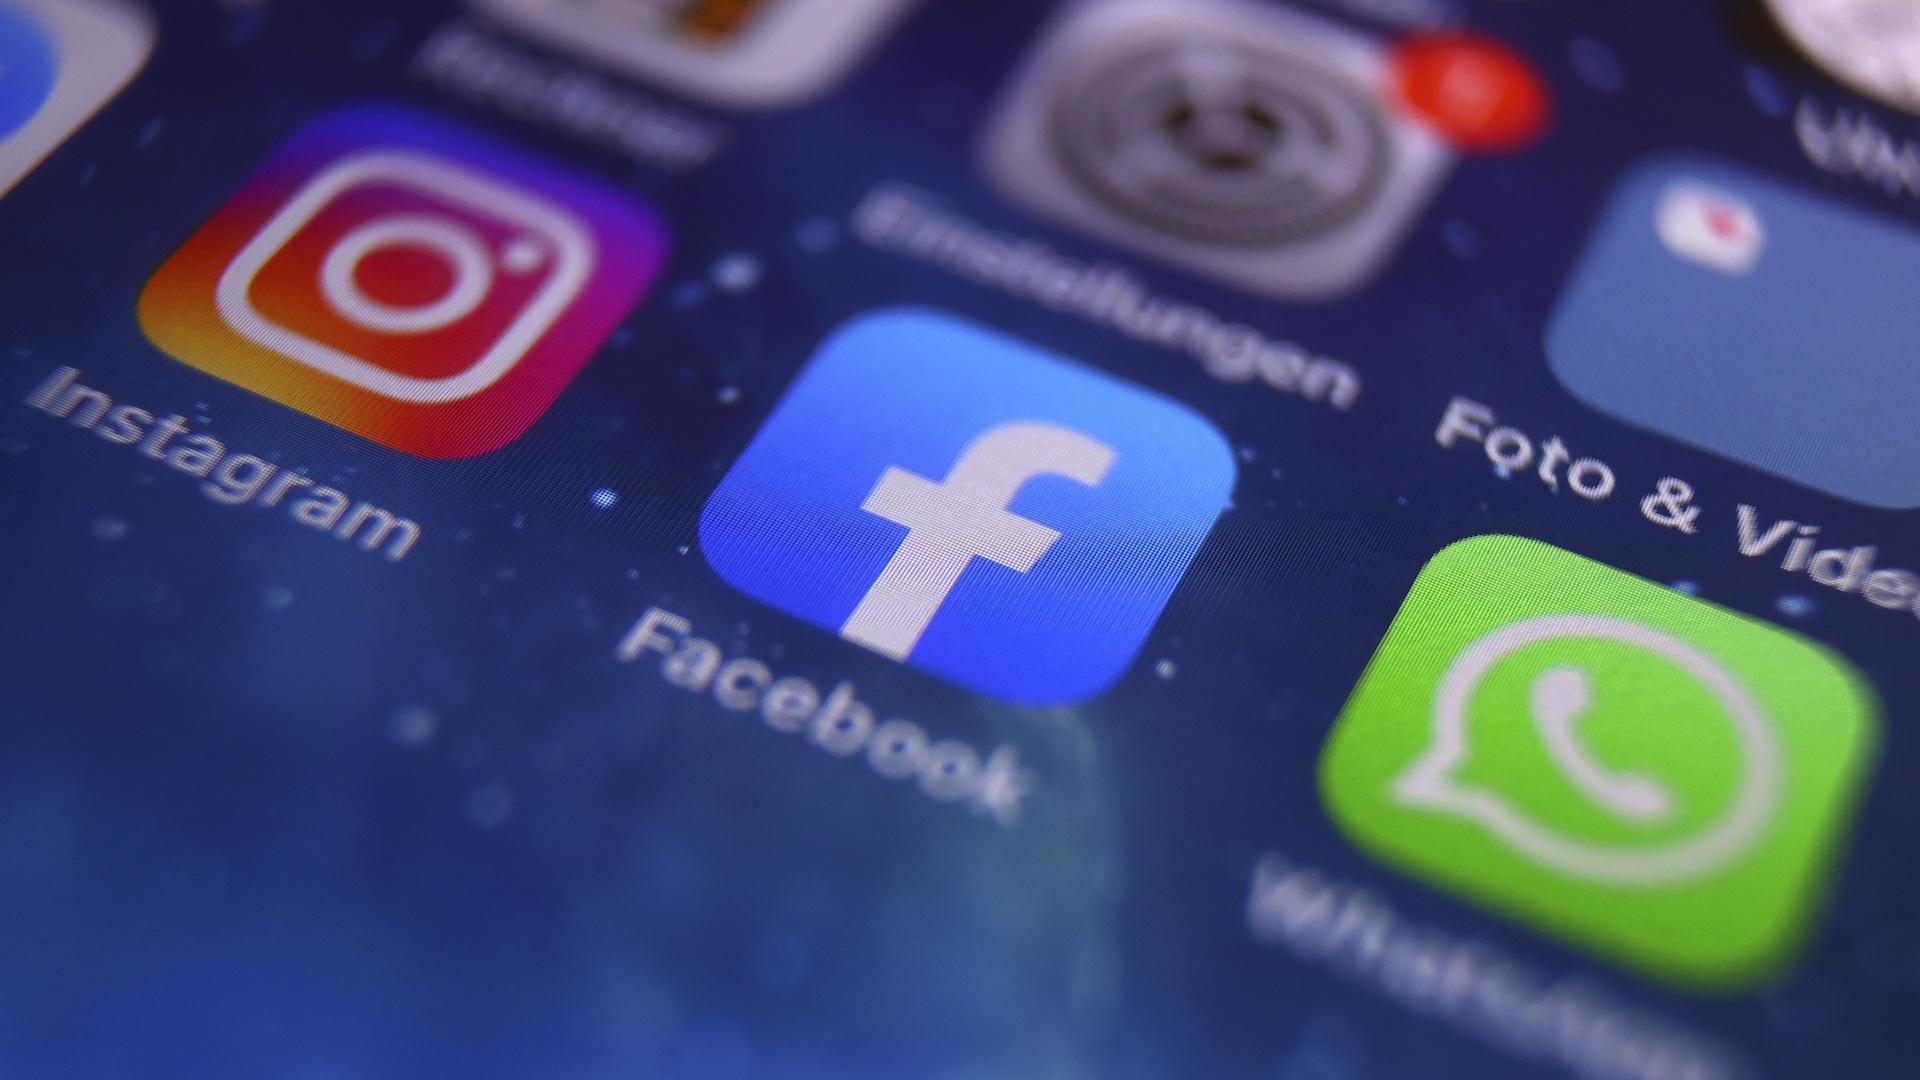 Les icônes d'Instagram, Facebook et WhatsApp peuvent être vues sur l'écran d'un smartphone à Kempten, en Allemagne, le lundi 4 octobre 2021. (Karl-Josef Hildenbrand/dpa via AP)